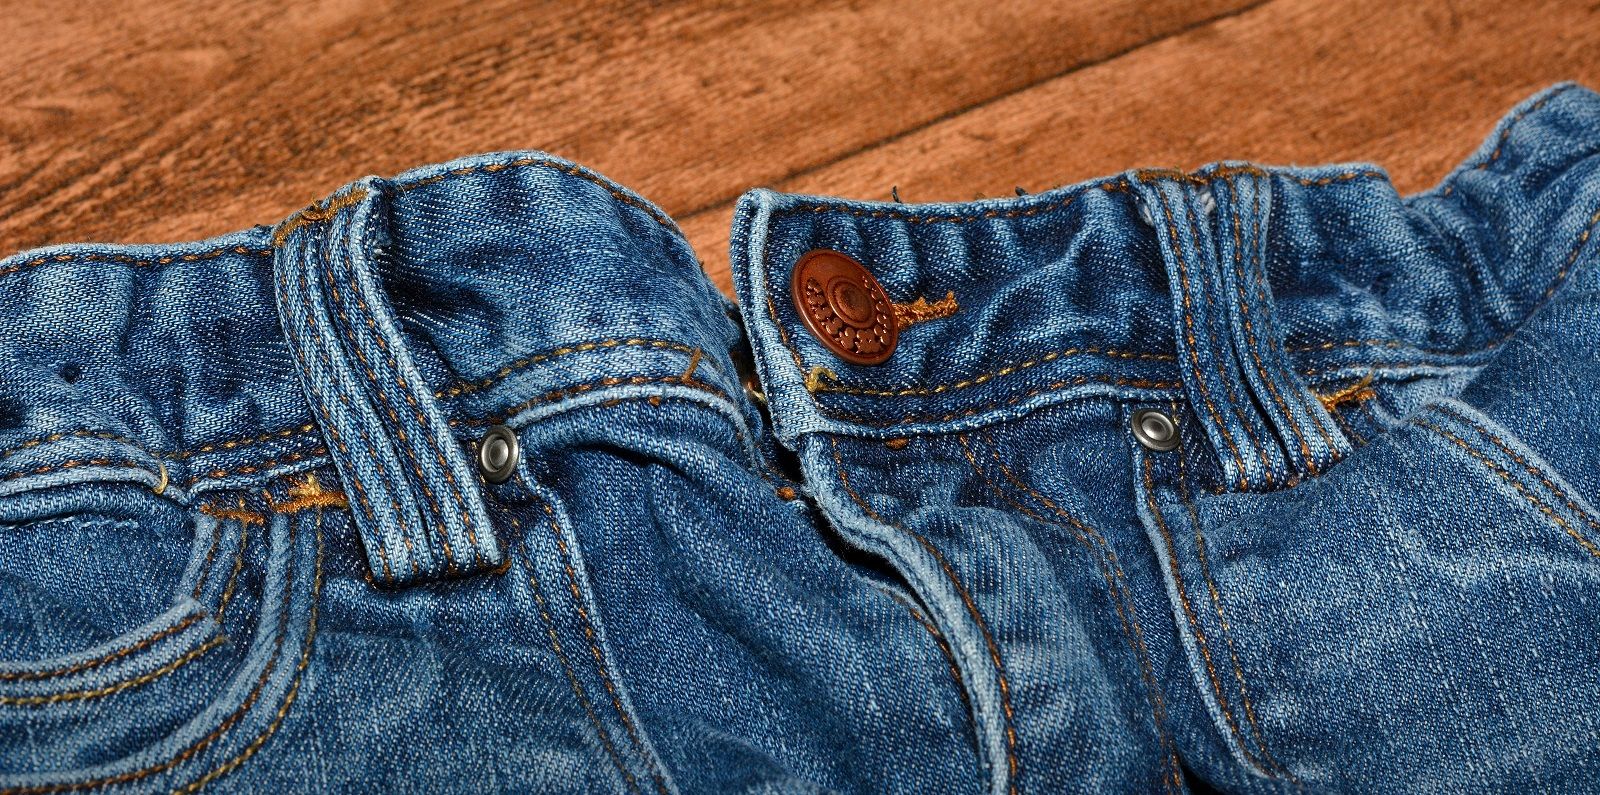 Trucchi per rimuovere le macchie d’olio dai jeans